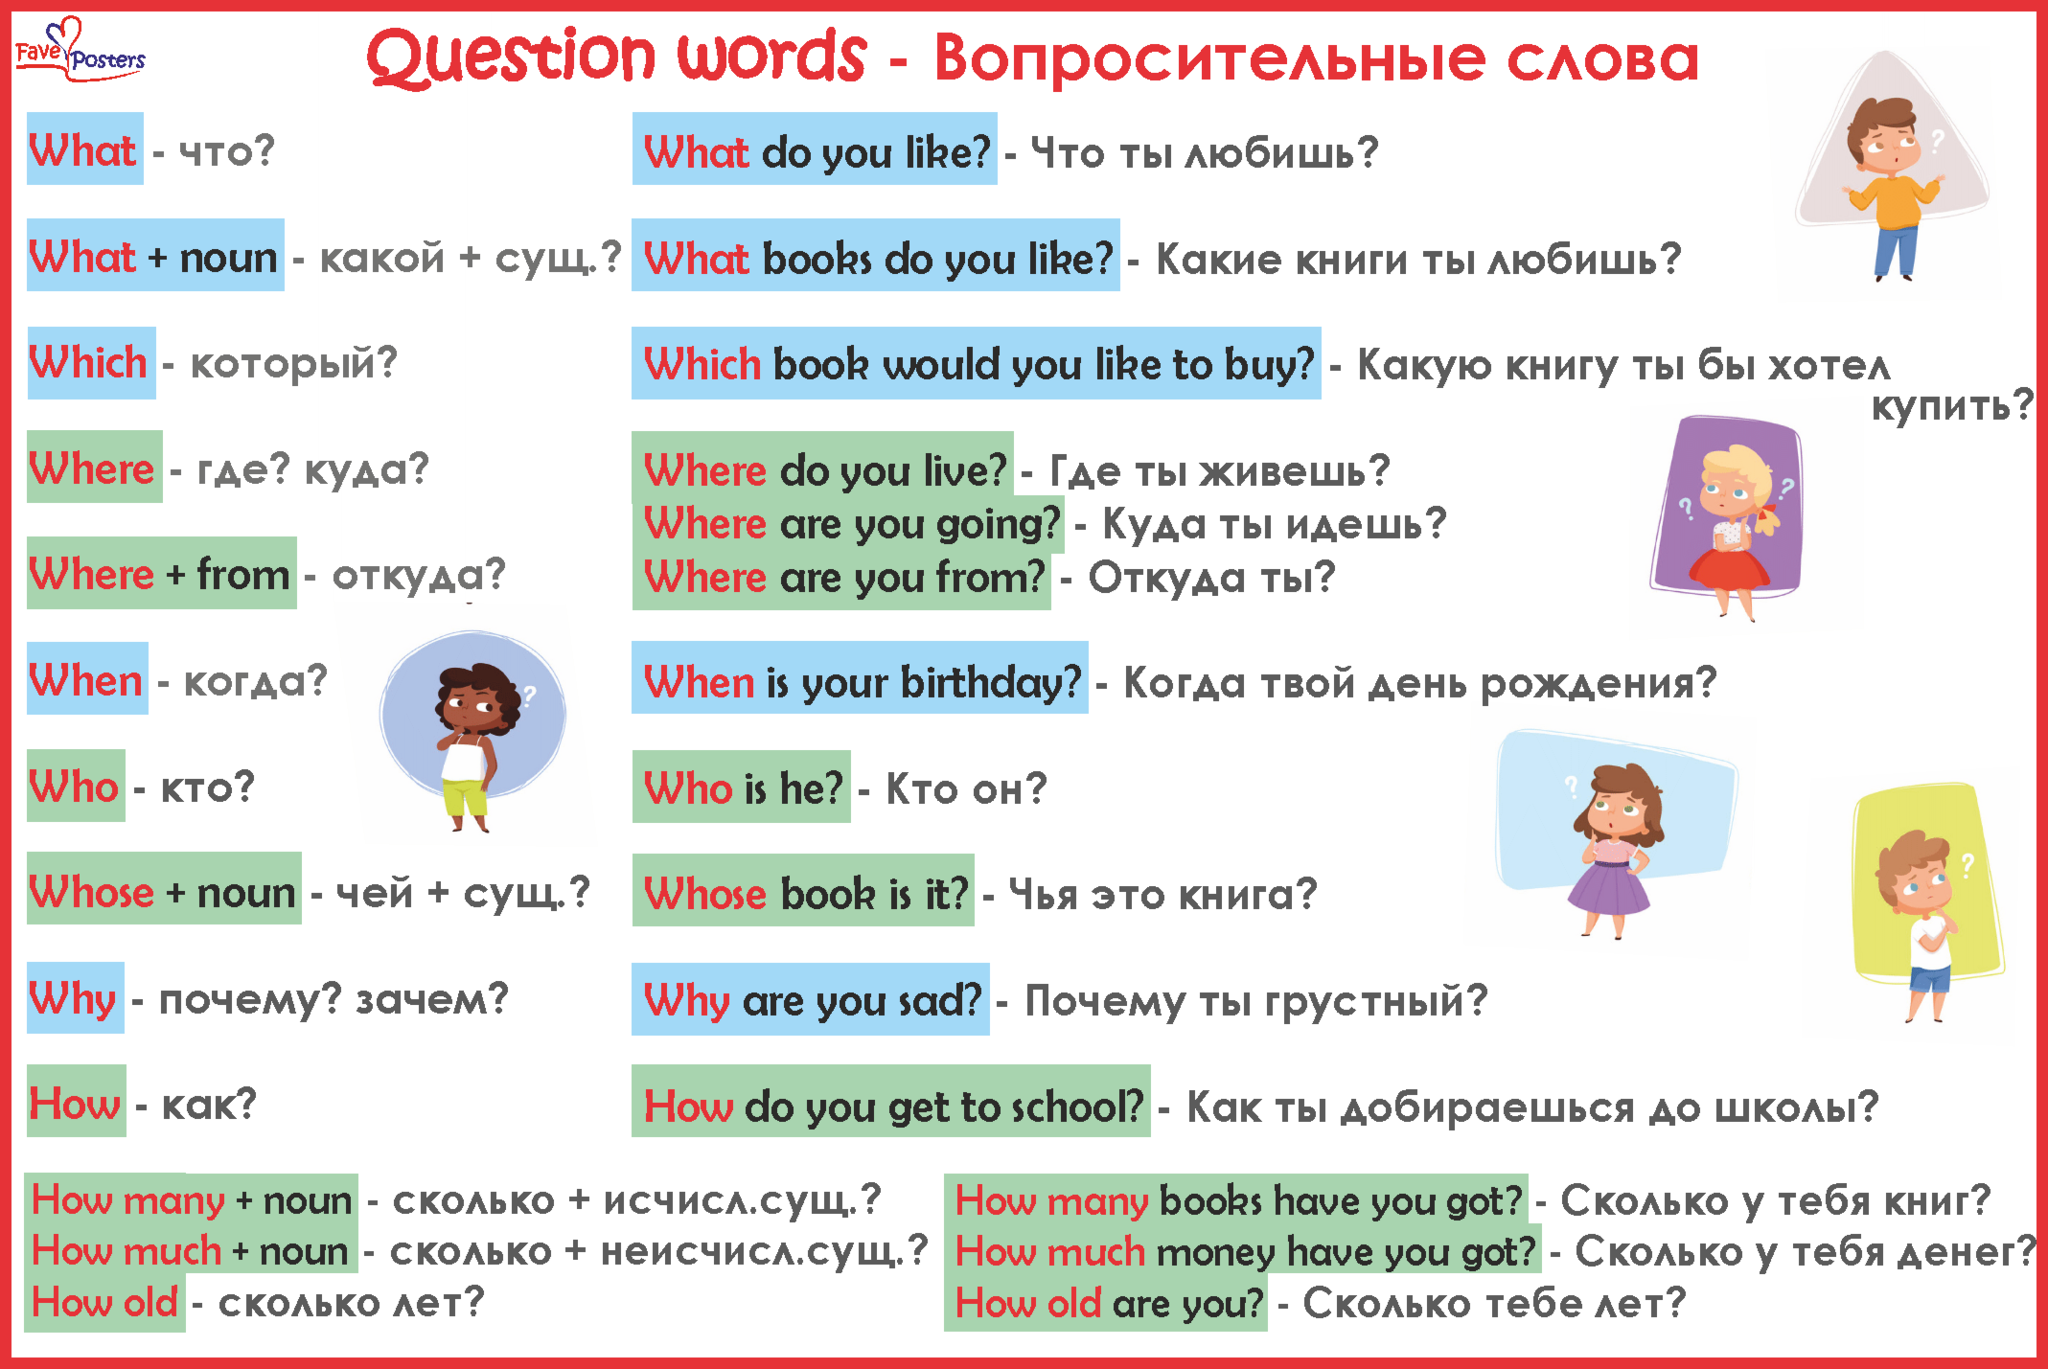 Questions did you like. Вопросительные слова в английском языке. Слова вопросы в английском языке. Вопросы с вопросительными словами в английском. Вопросительные слова в англиский языке.